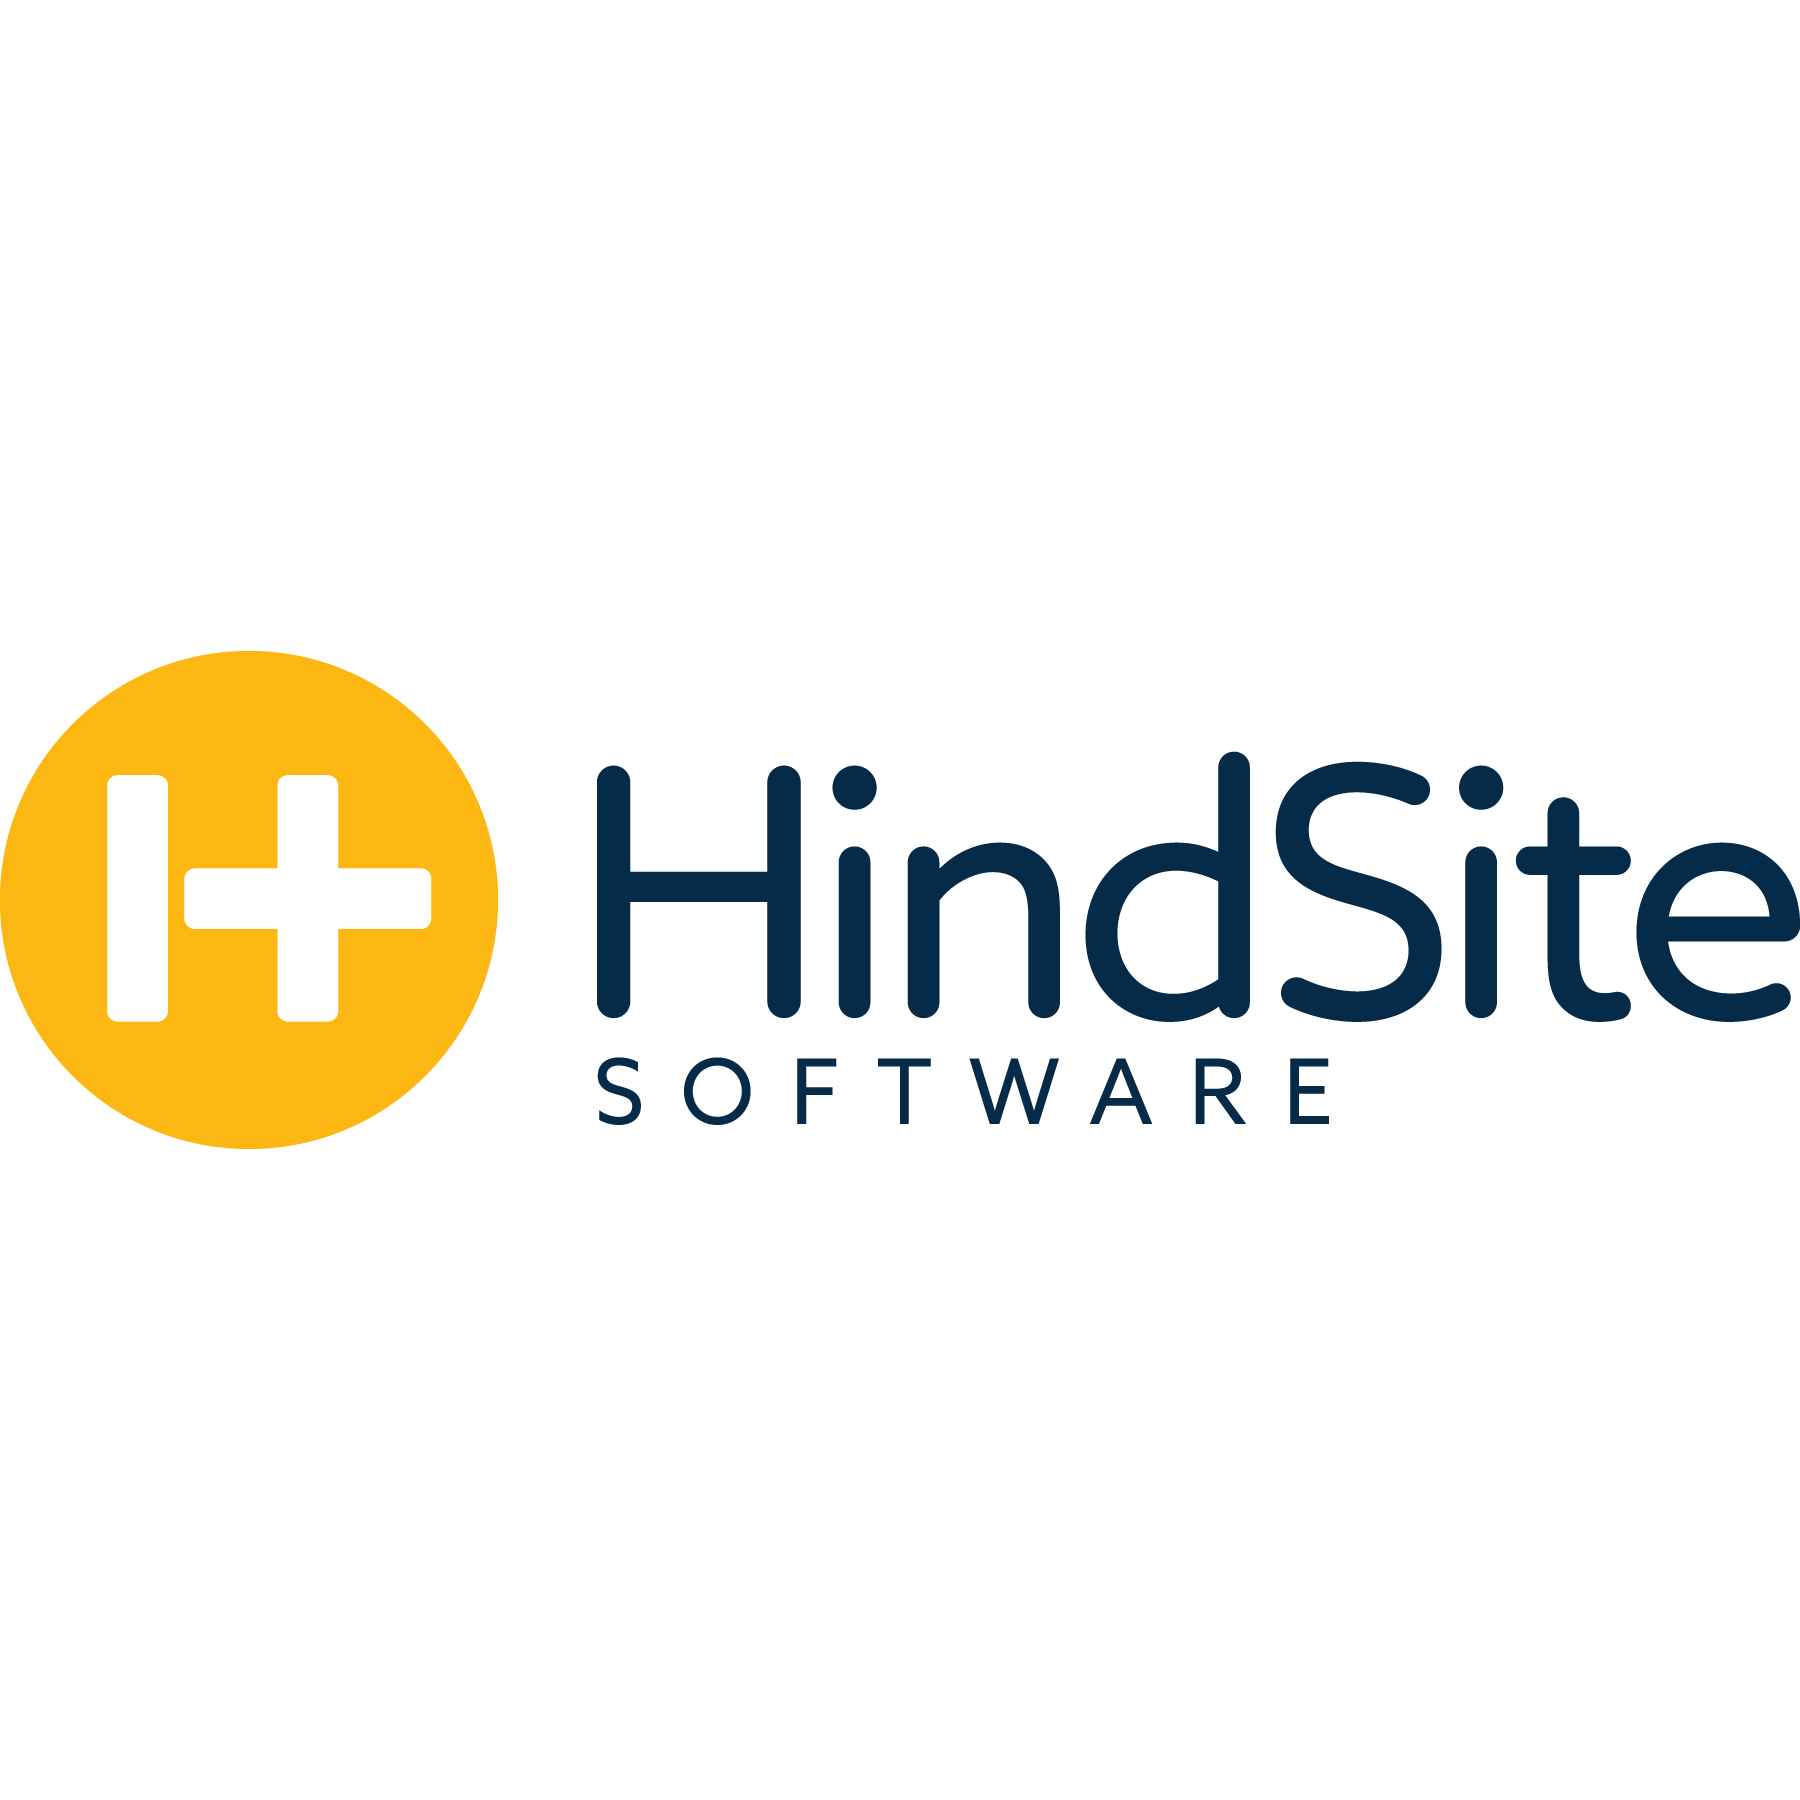 Hindsite Software